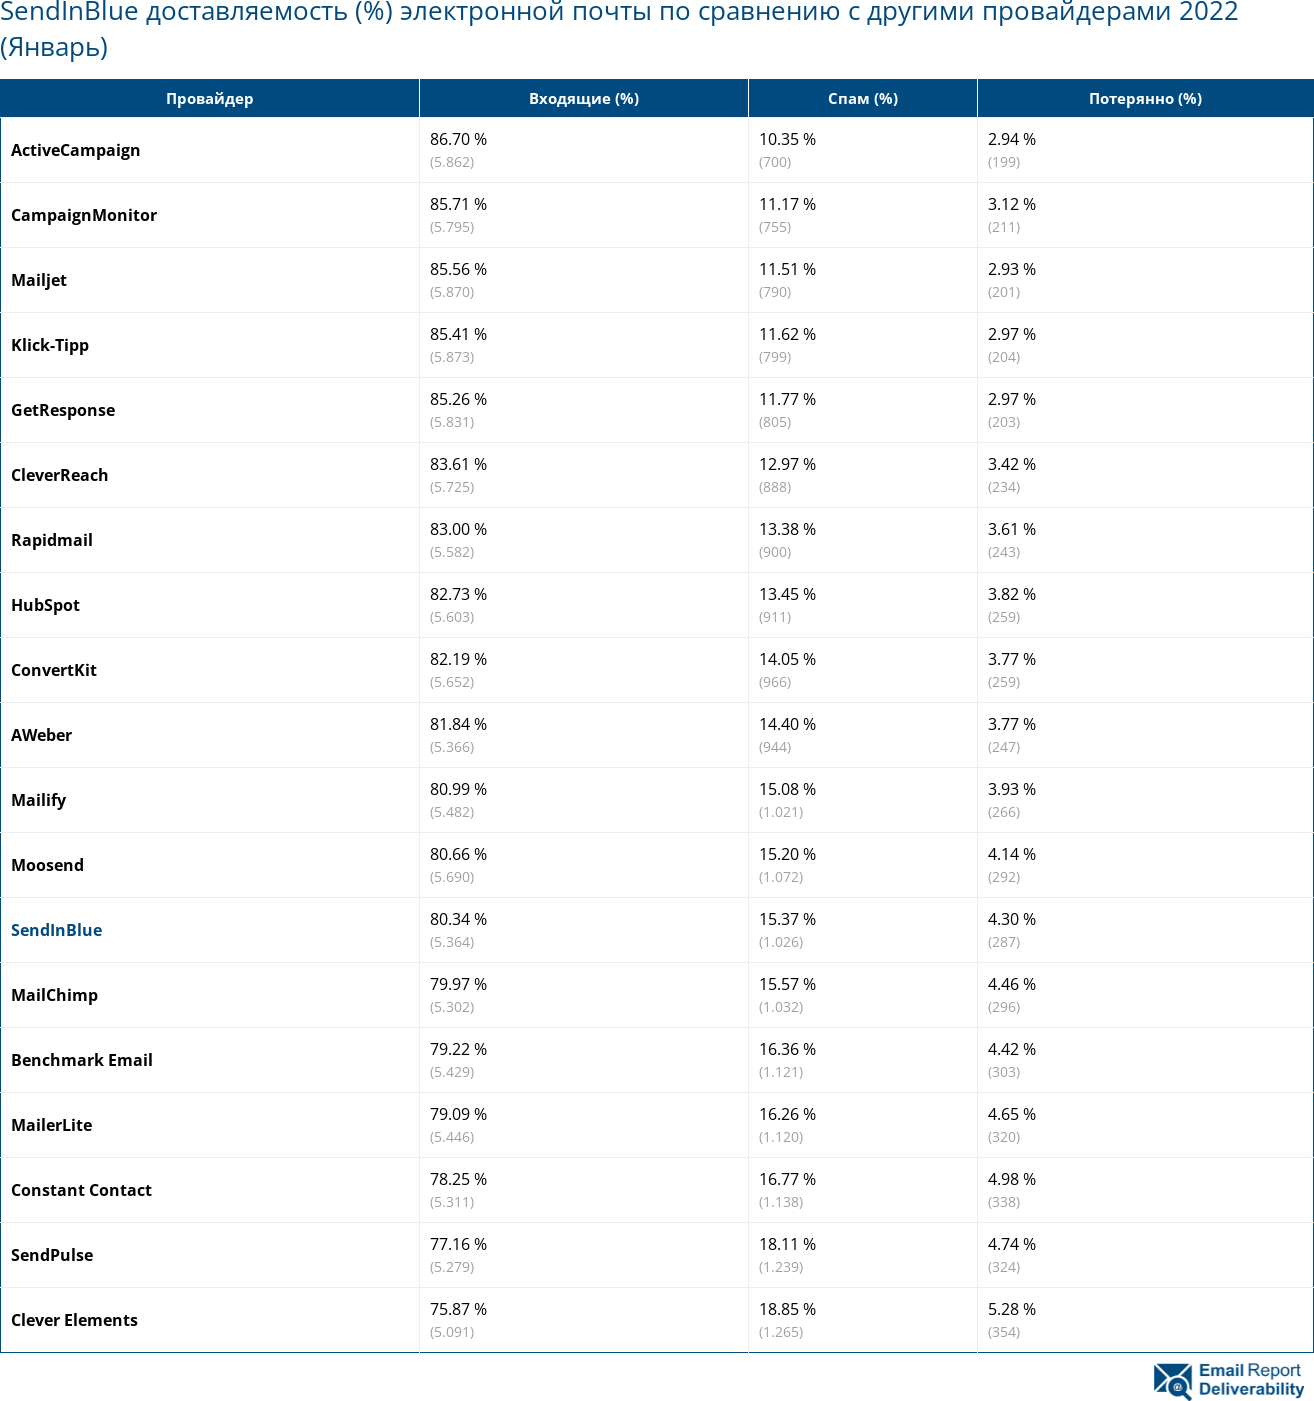 SendInBlue доставляемость (%) электронной почты по сравнению с другими провайдерами 2022 (Январь)